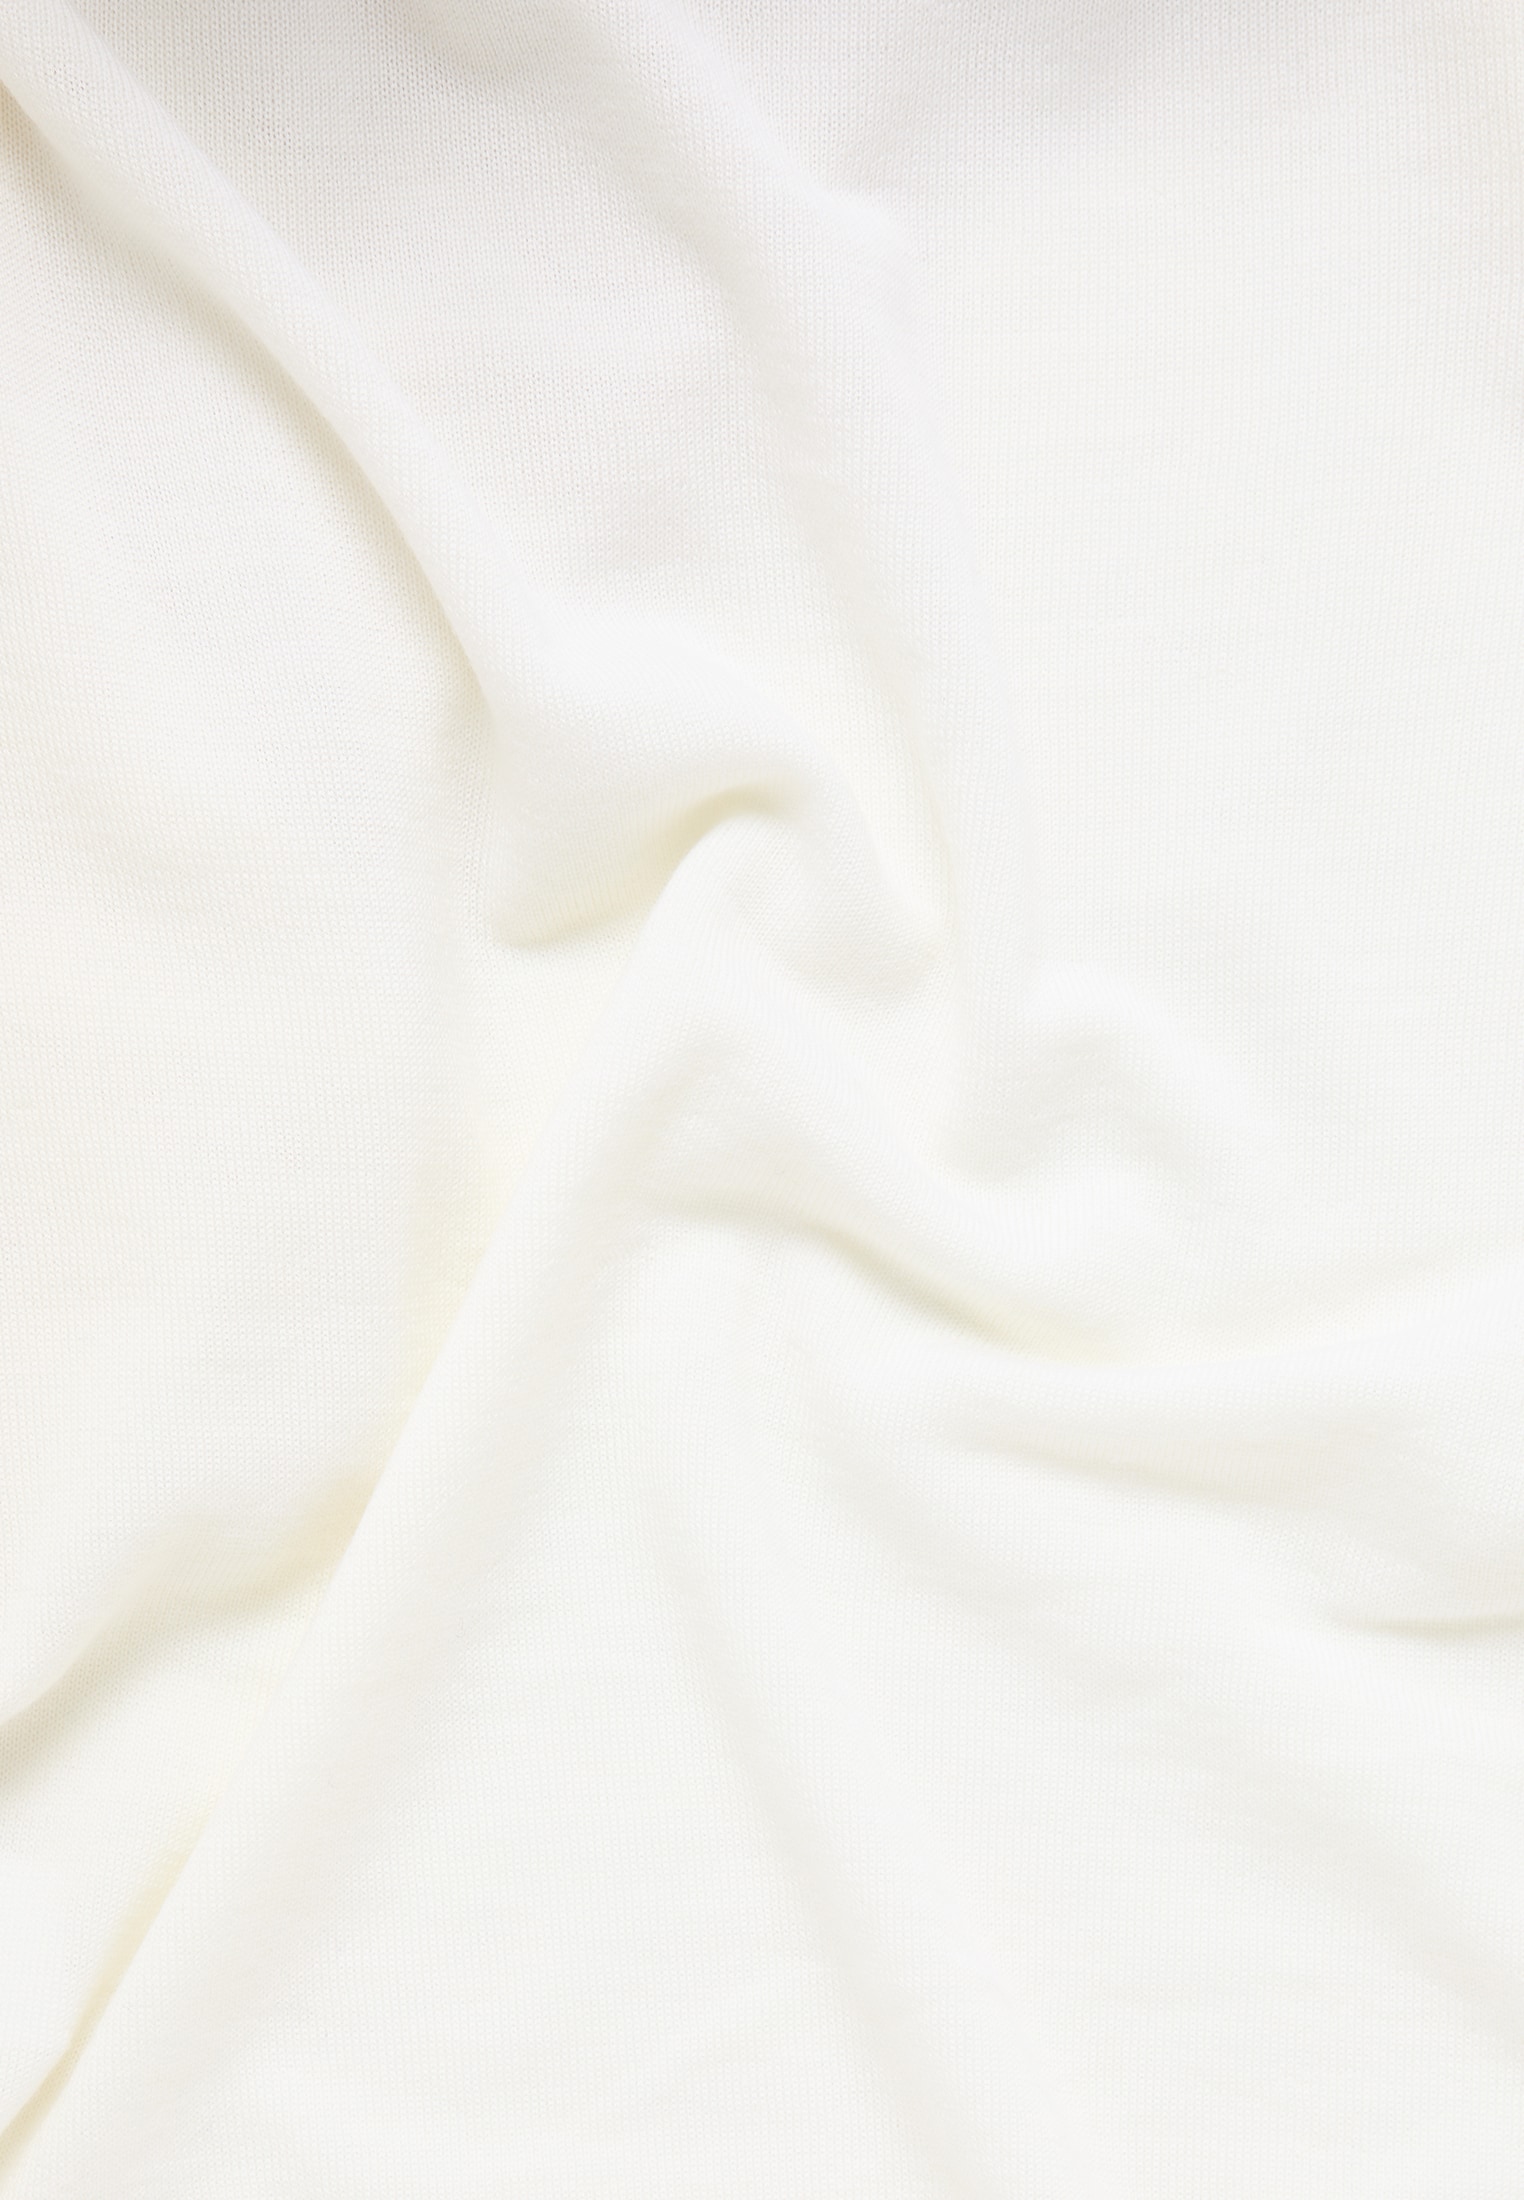 Strick Pullover in weiß unifarben